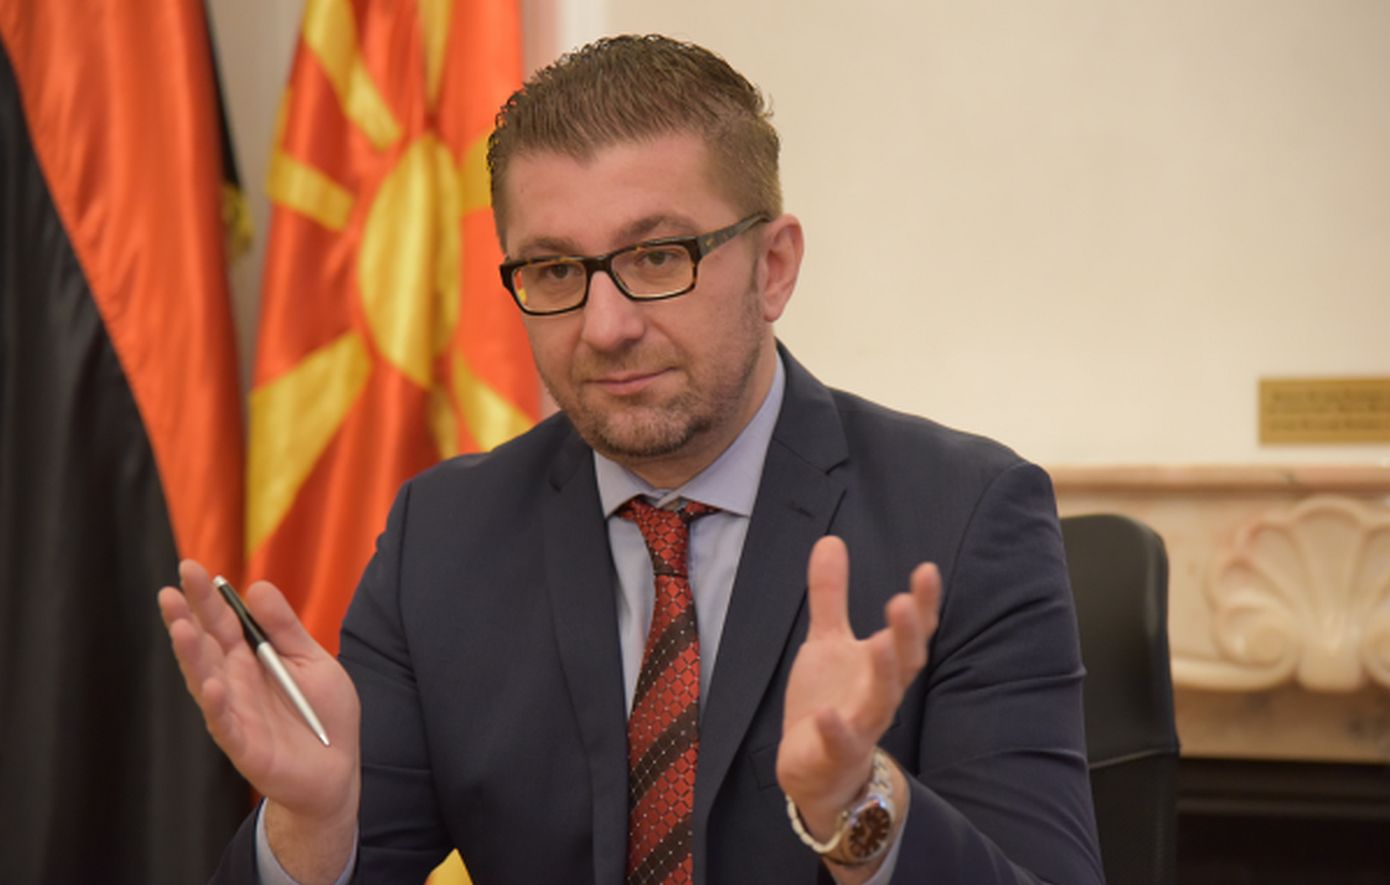 Η κυβέρνηση Μίτσκοσκι ορκίστηκε  σύμφωνα με το συνταγματικό όνομα της χώρας «Δημοκρατία της Βόρειας Μακεδονίας»